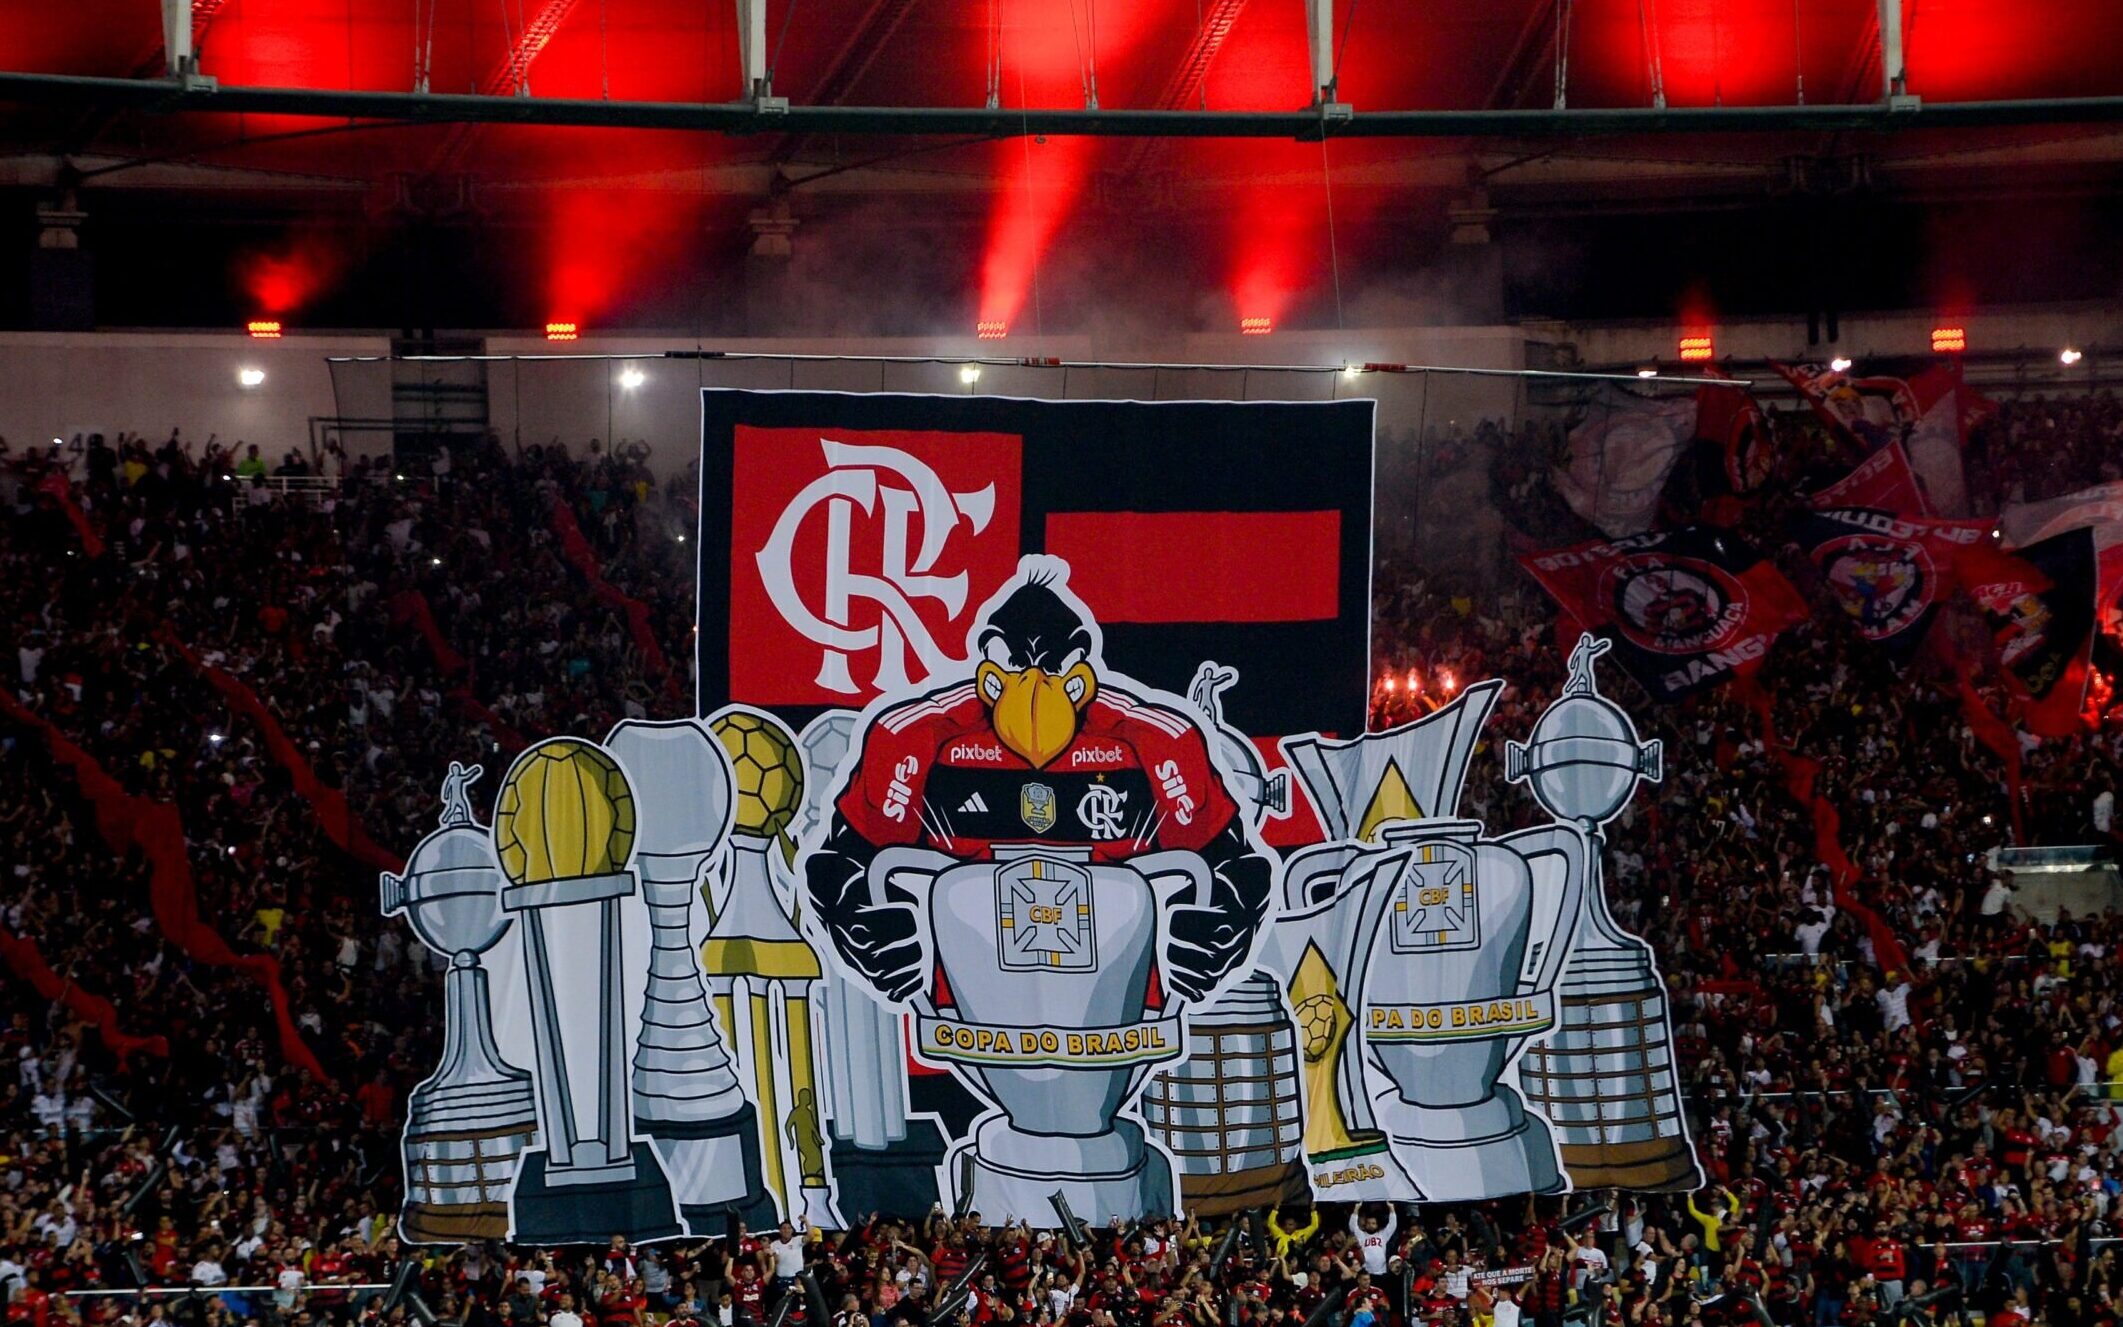 Flamengo tem 7 jogadores em reta final de contrato; veja situação